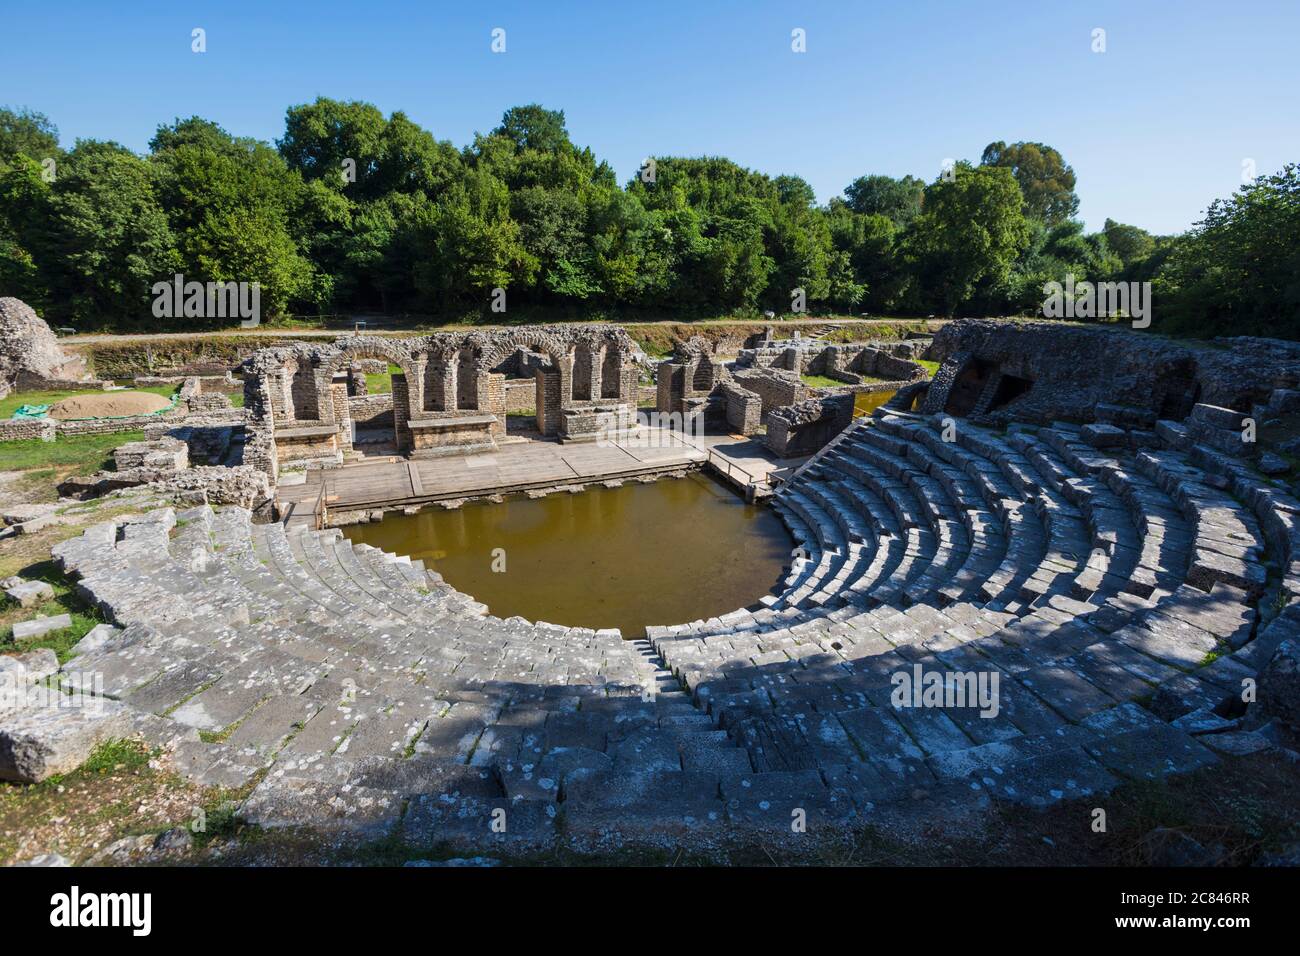 L'Albania. Butrinto o Buthrotum sito archeologico; un sito Patrimonio Mondiale dell'UNESCO. Il teatro. Un aumento della tavola di acqua ha invaso l'orchestra. Foto Stock